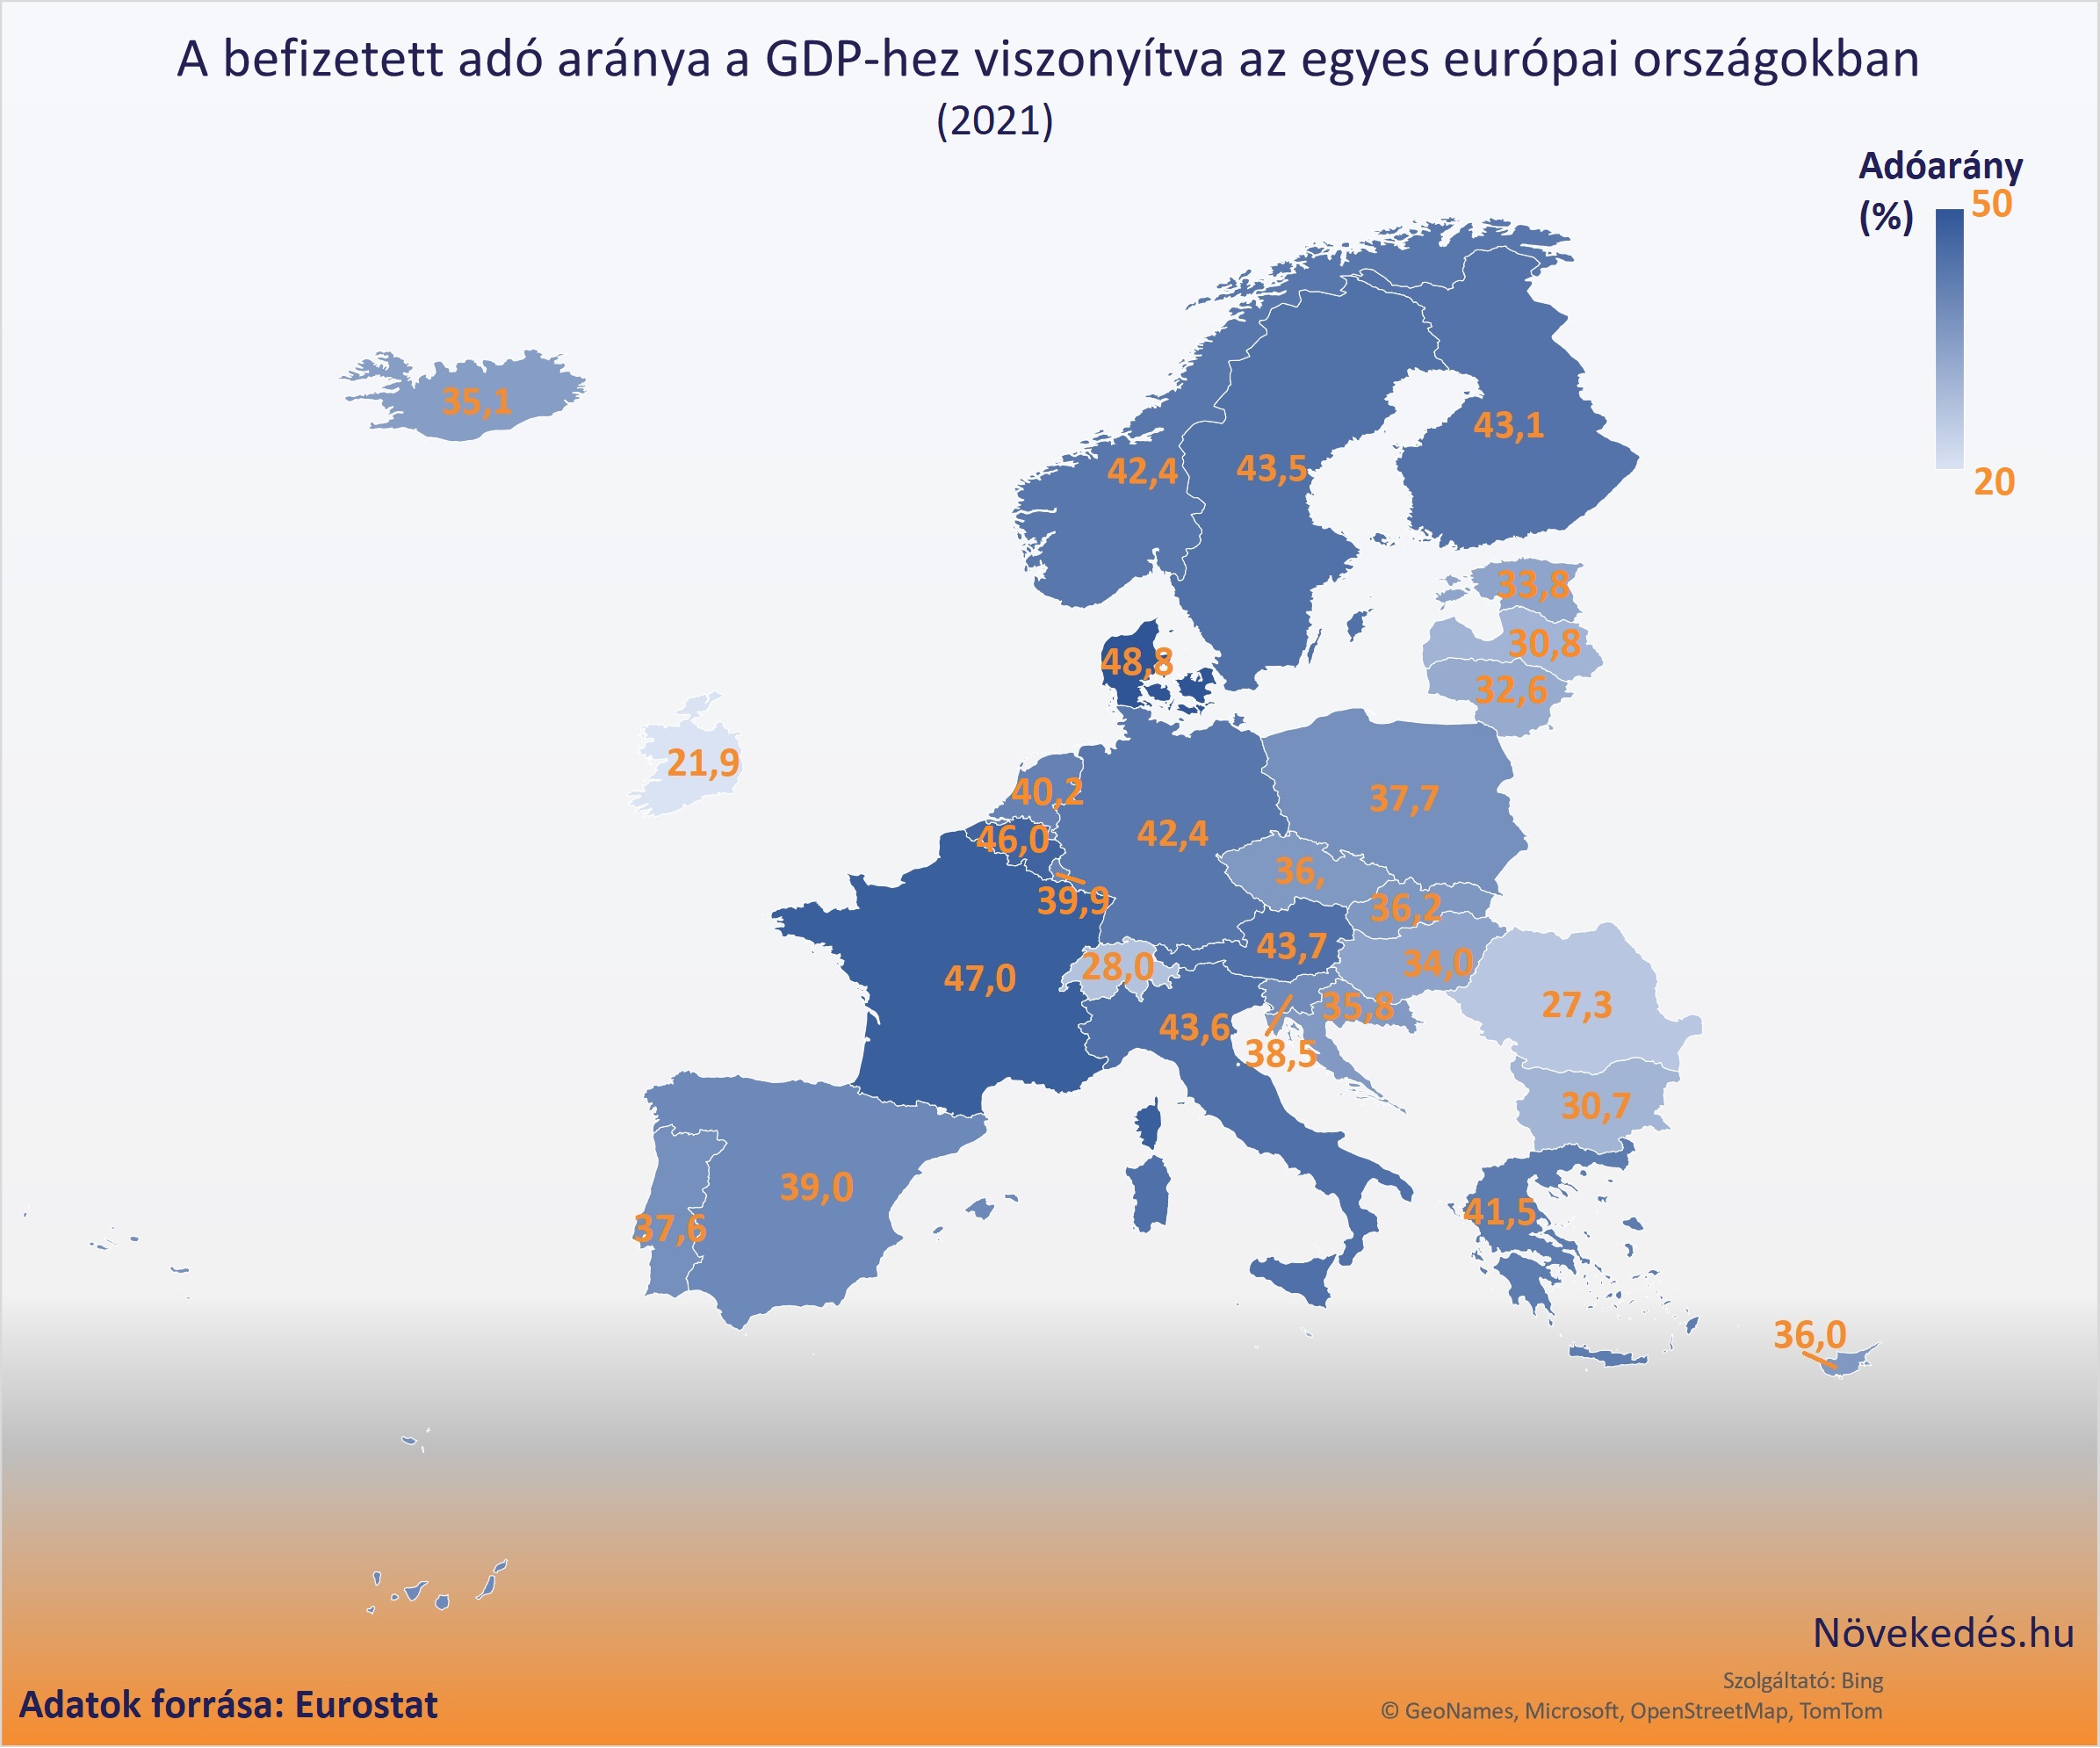 A befizetett adó aránya a GDP-hez viszonyítva az egyes európai országokban (2021)